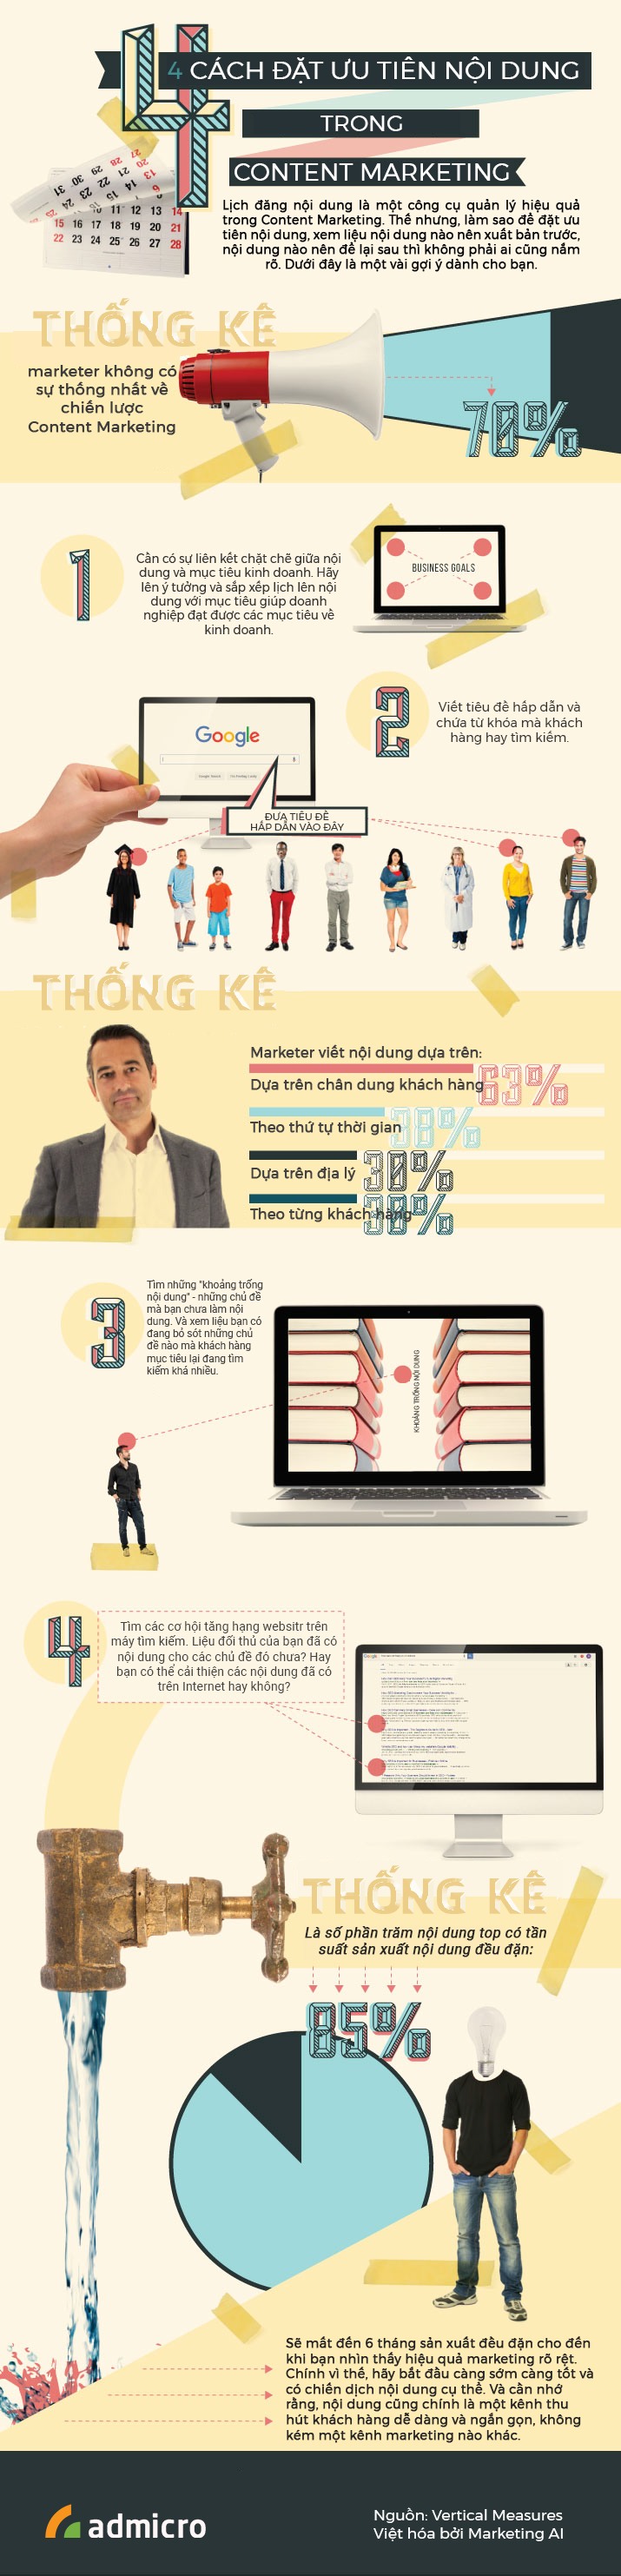 infographic đặt ưu tiên nội dung content marketing